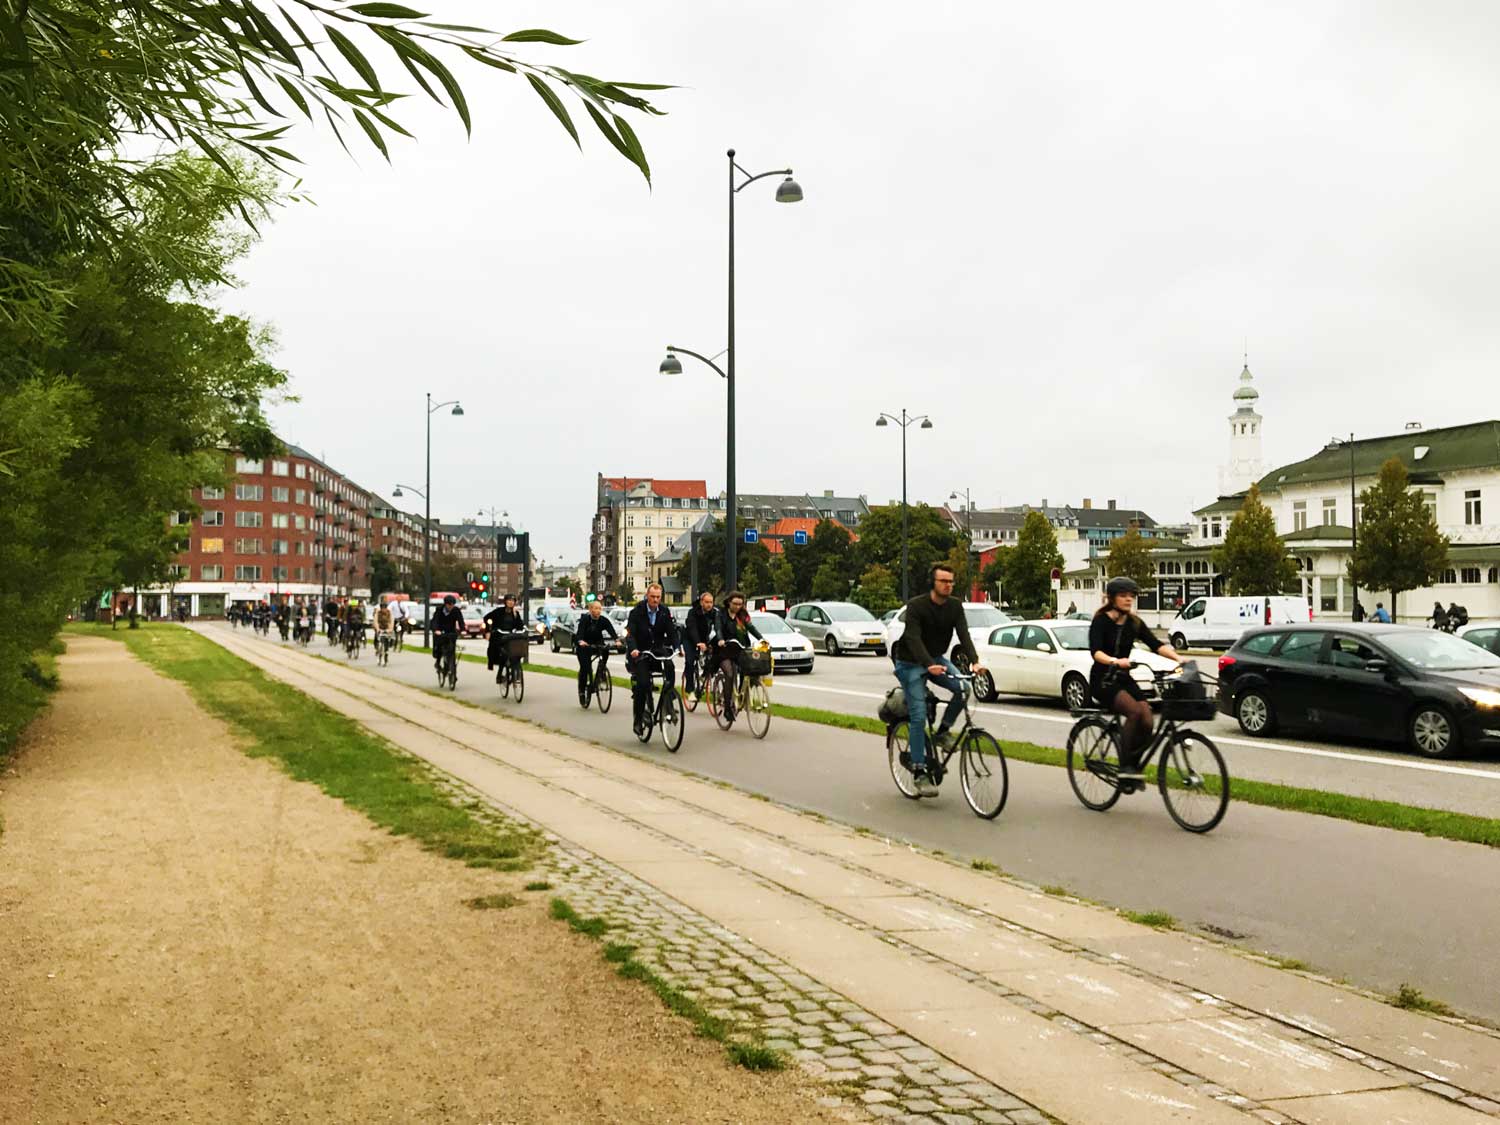 コペンハーゲン市街地の道路のほとんどには自転車専用レーンが完備